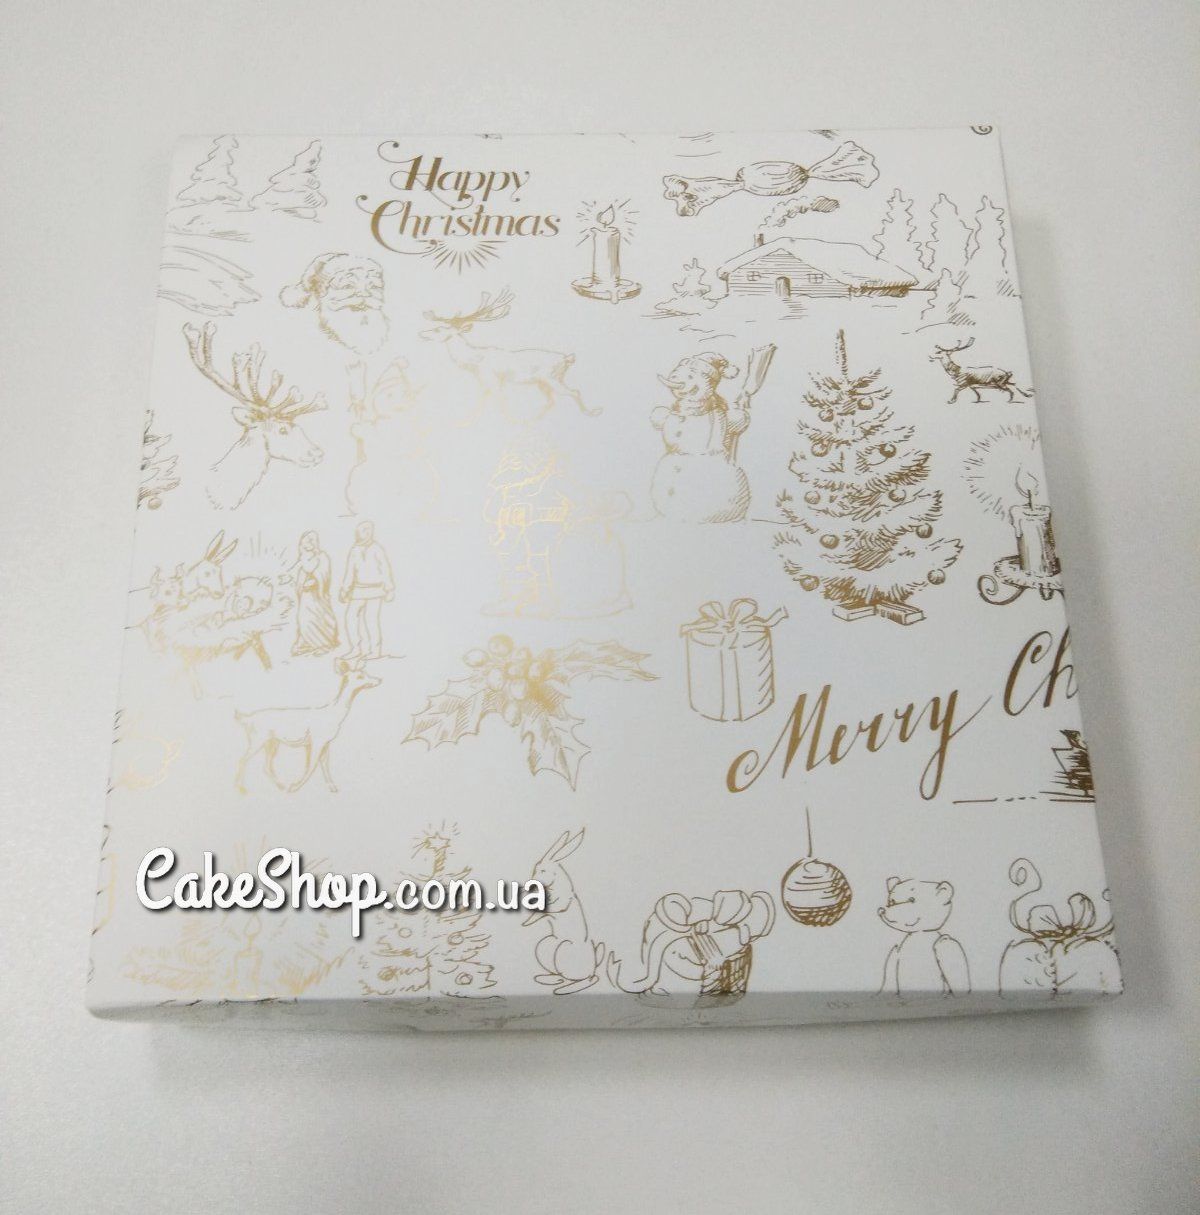 ⋗ Коробка для пряников с золотой печатью Merry Christmas без окна, 20х20х3,5 см купить в Украине ➛ CakeShop.com.ua, фото